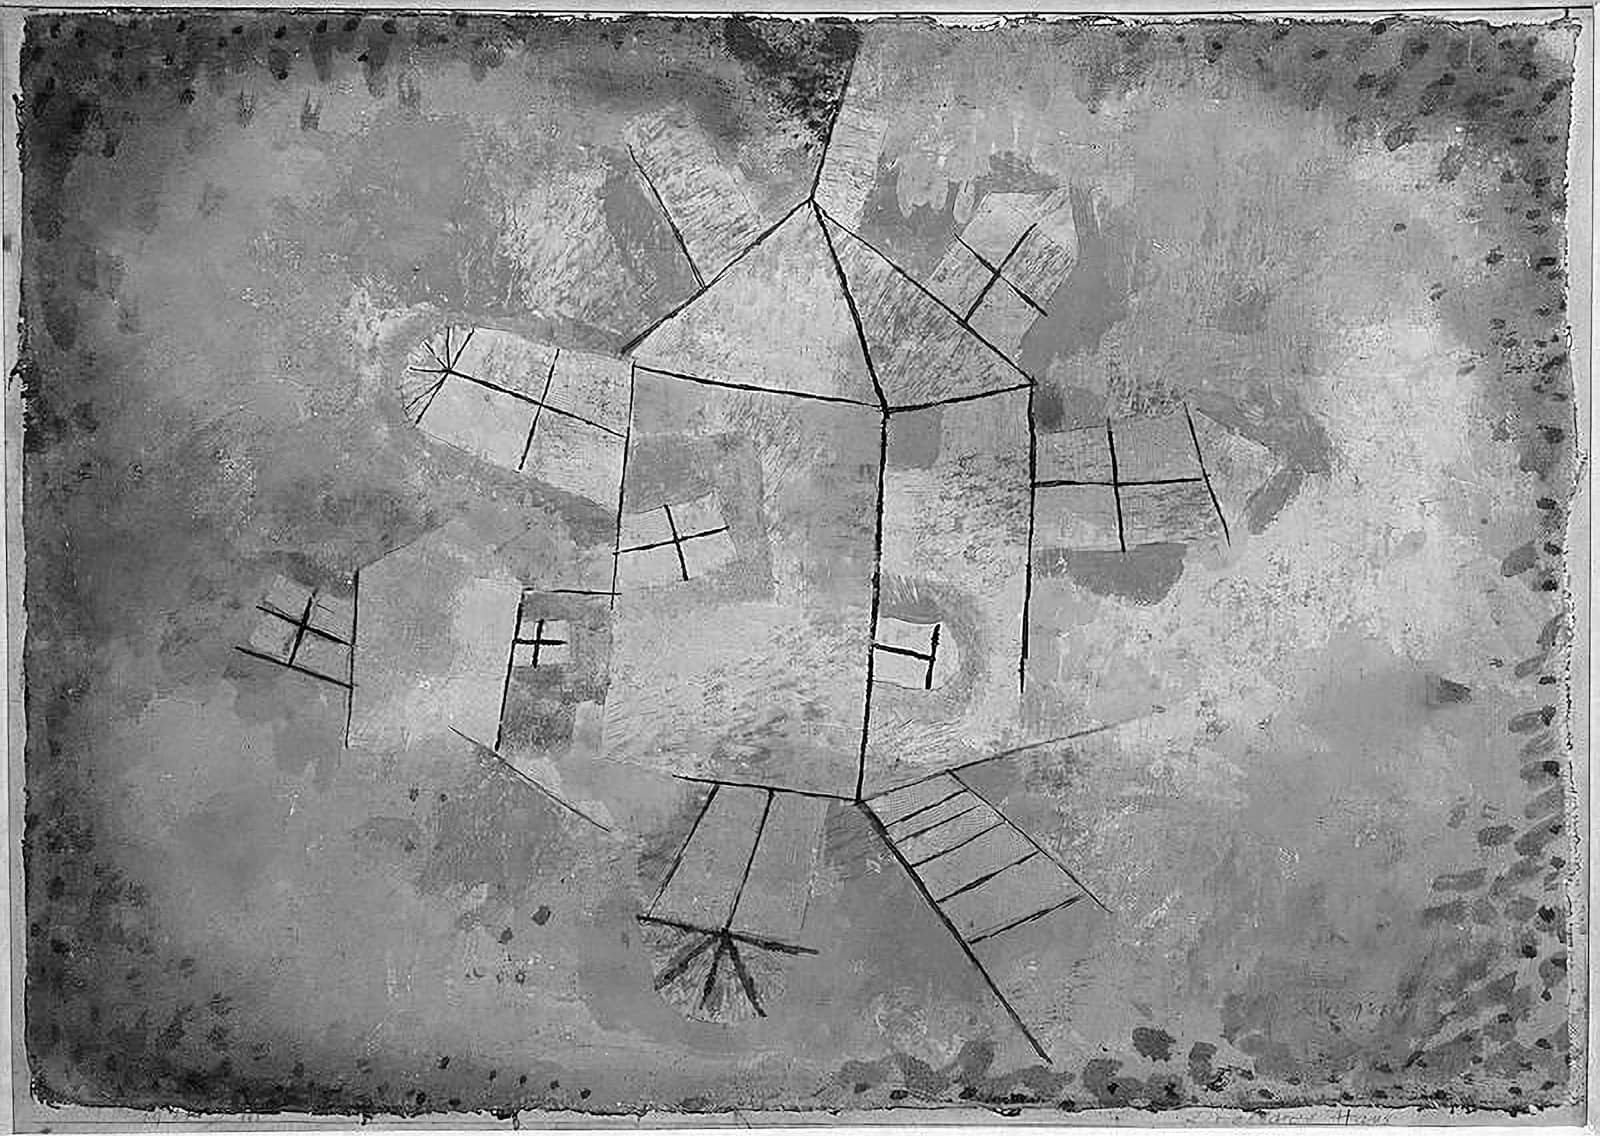 Paul Klee, Revolving House, 1921.